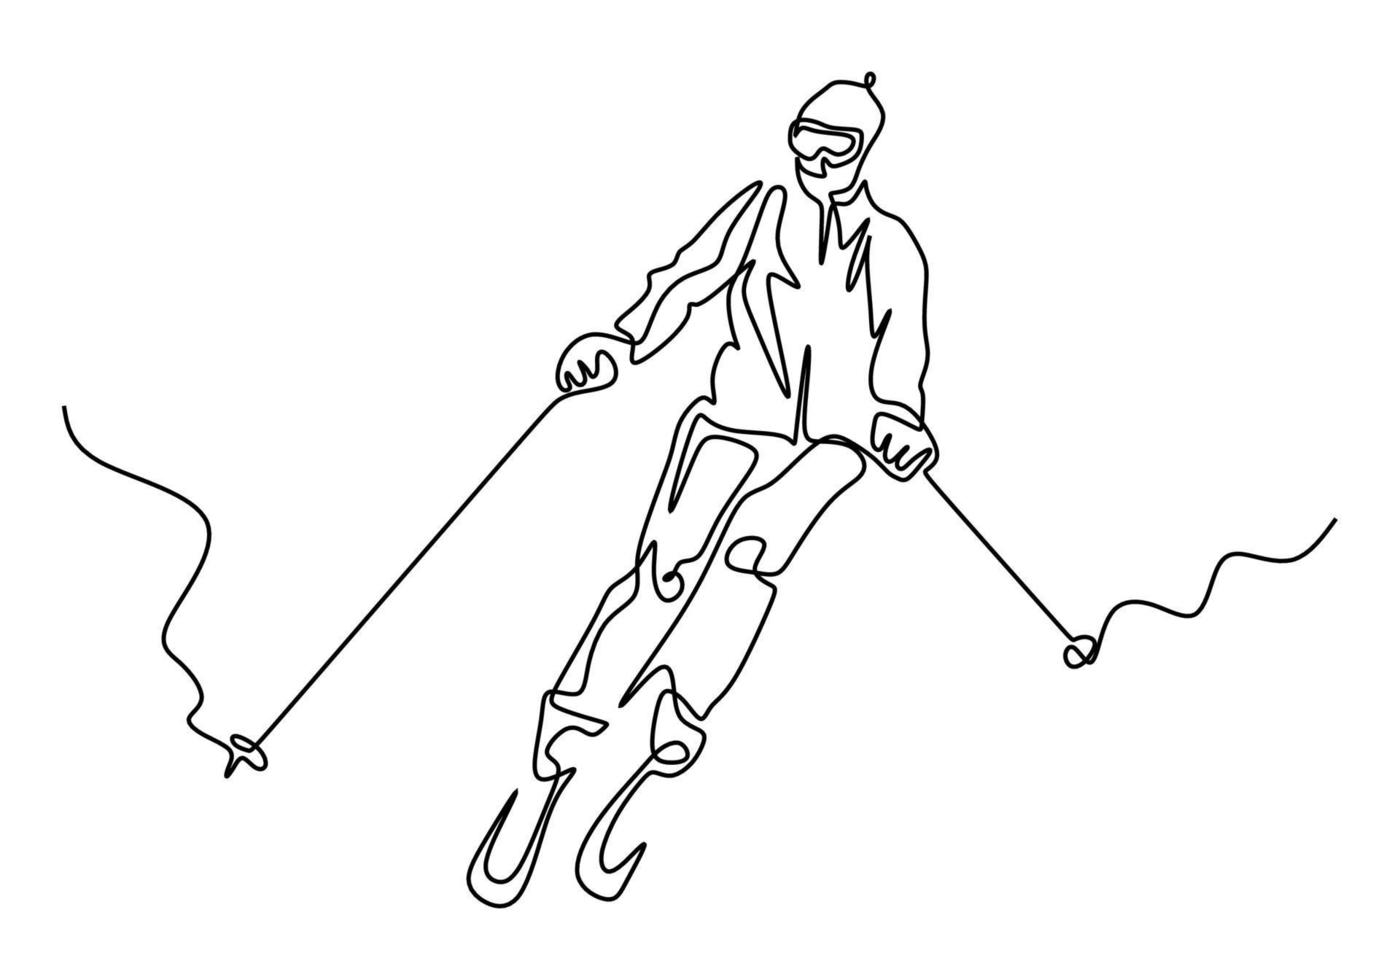 dessin au trait continu. skieur alpin ski de descente. sport d'hiver. vecteur